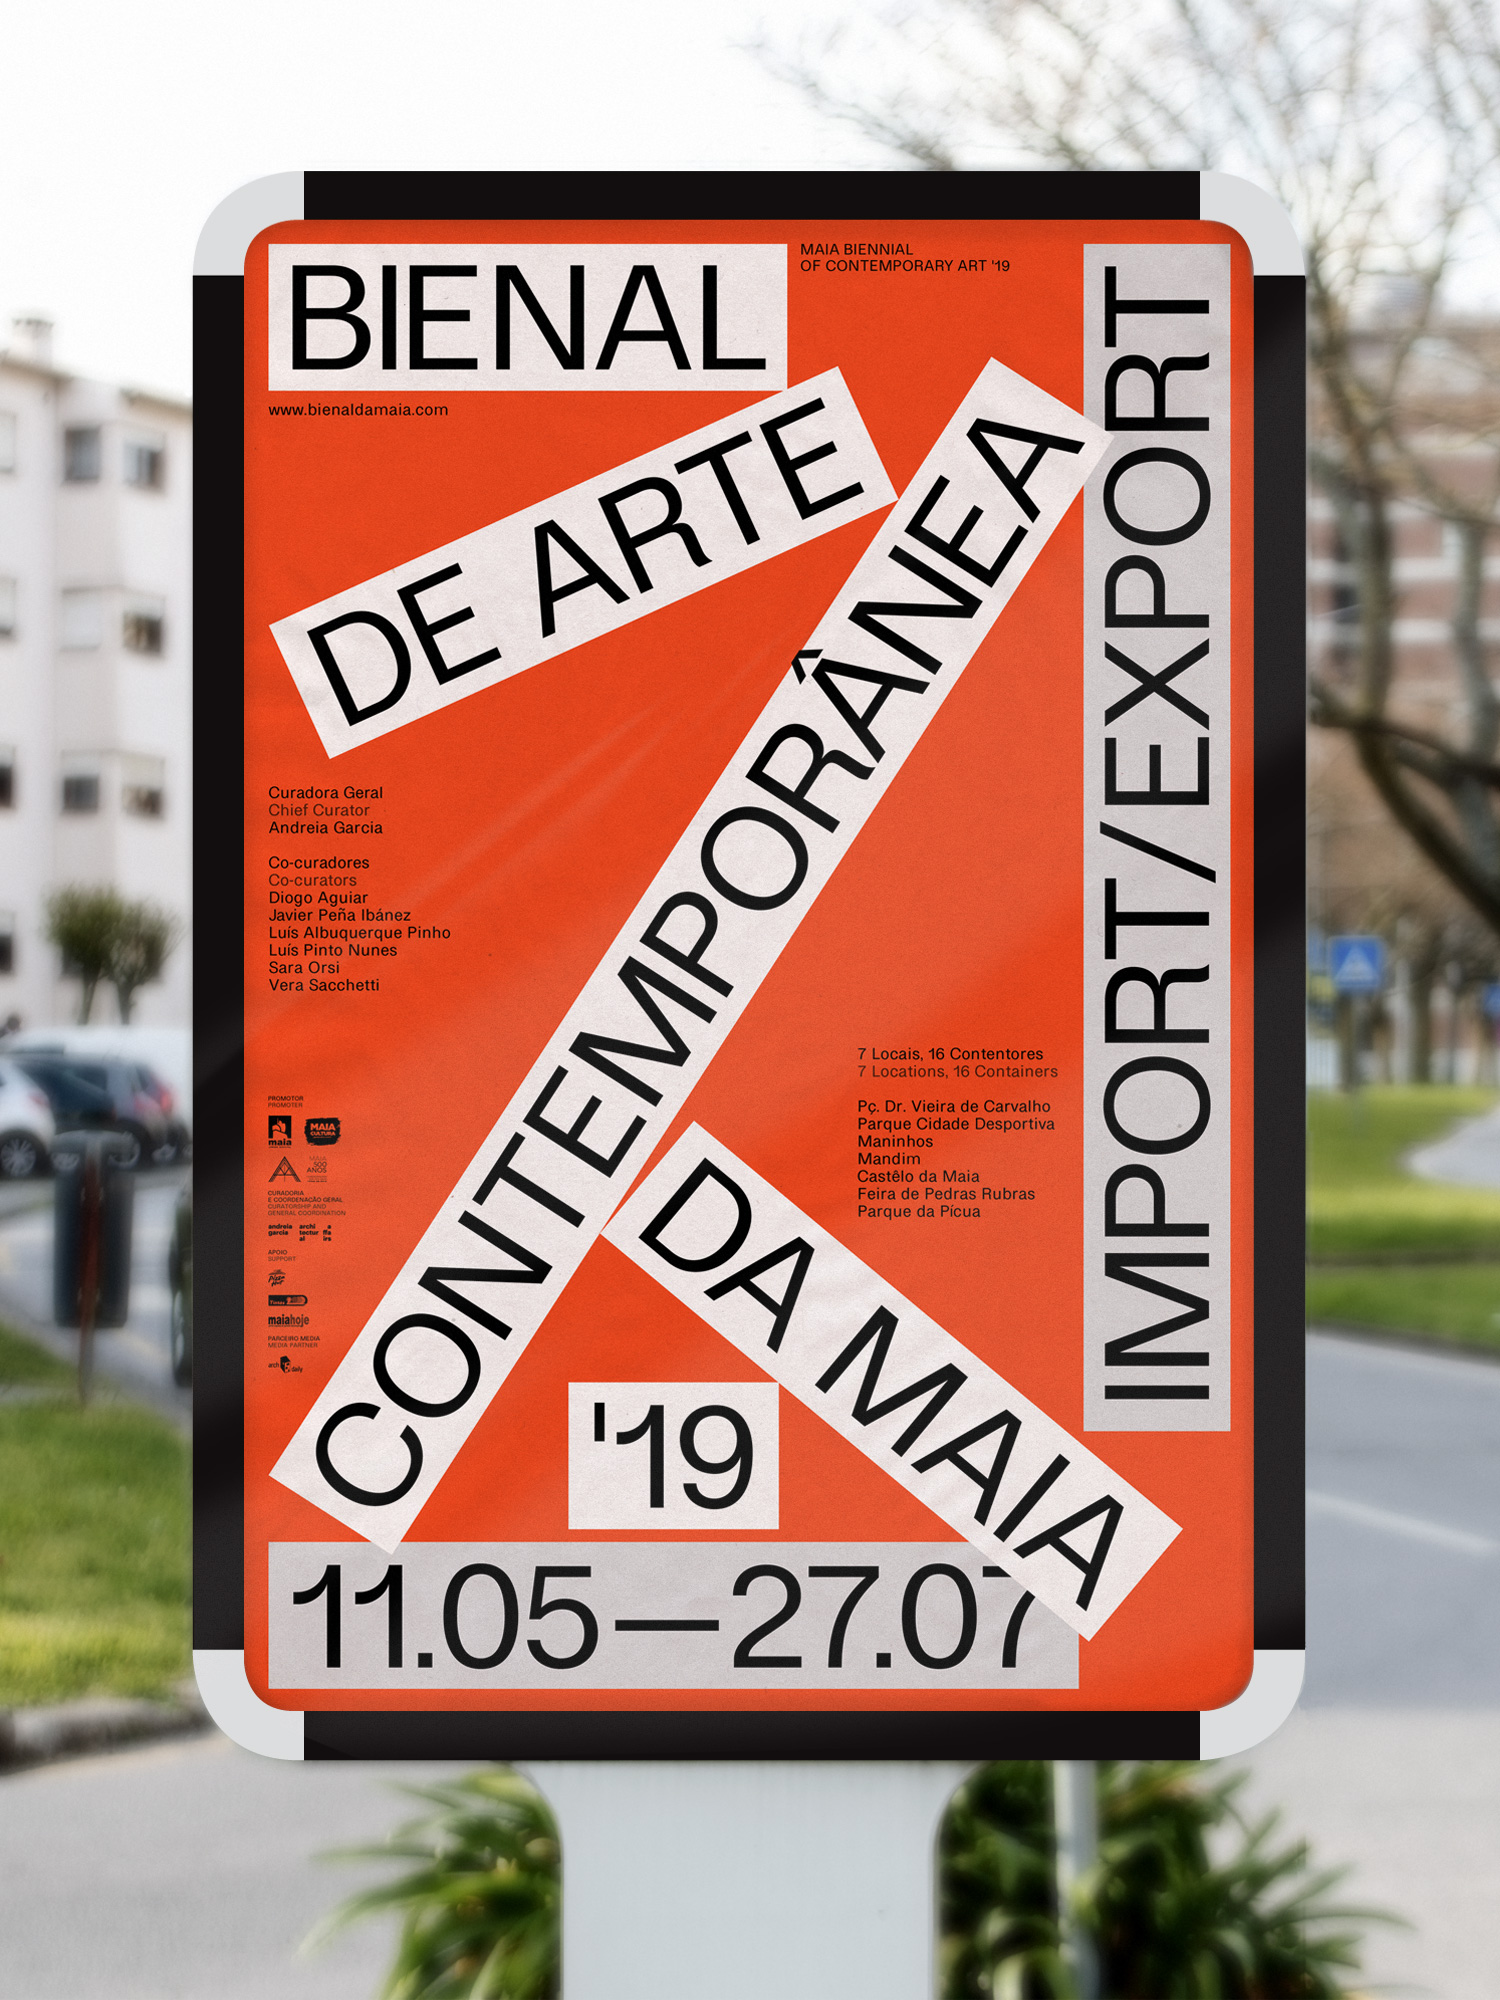 Maia Biennial of Contemporary Art '19